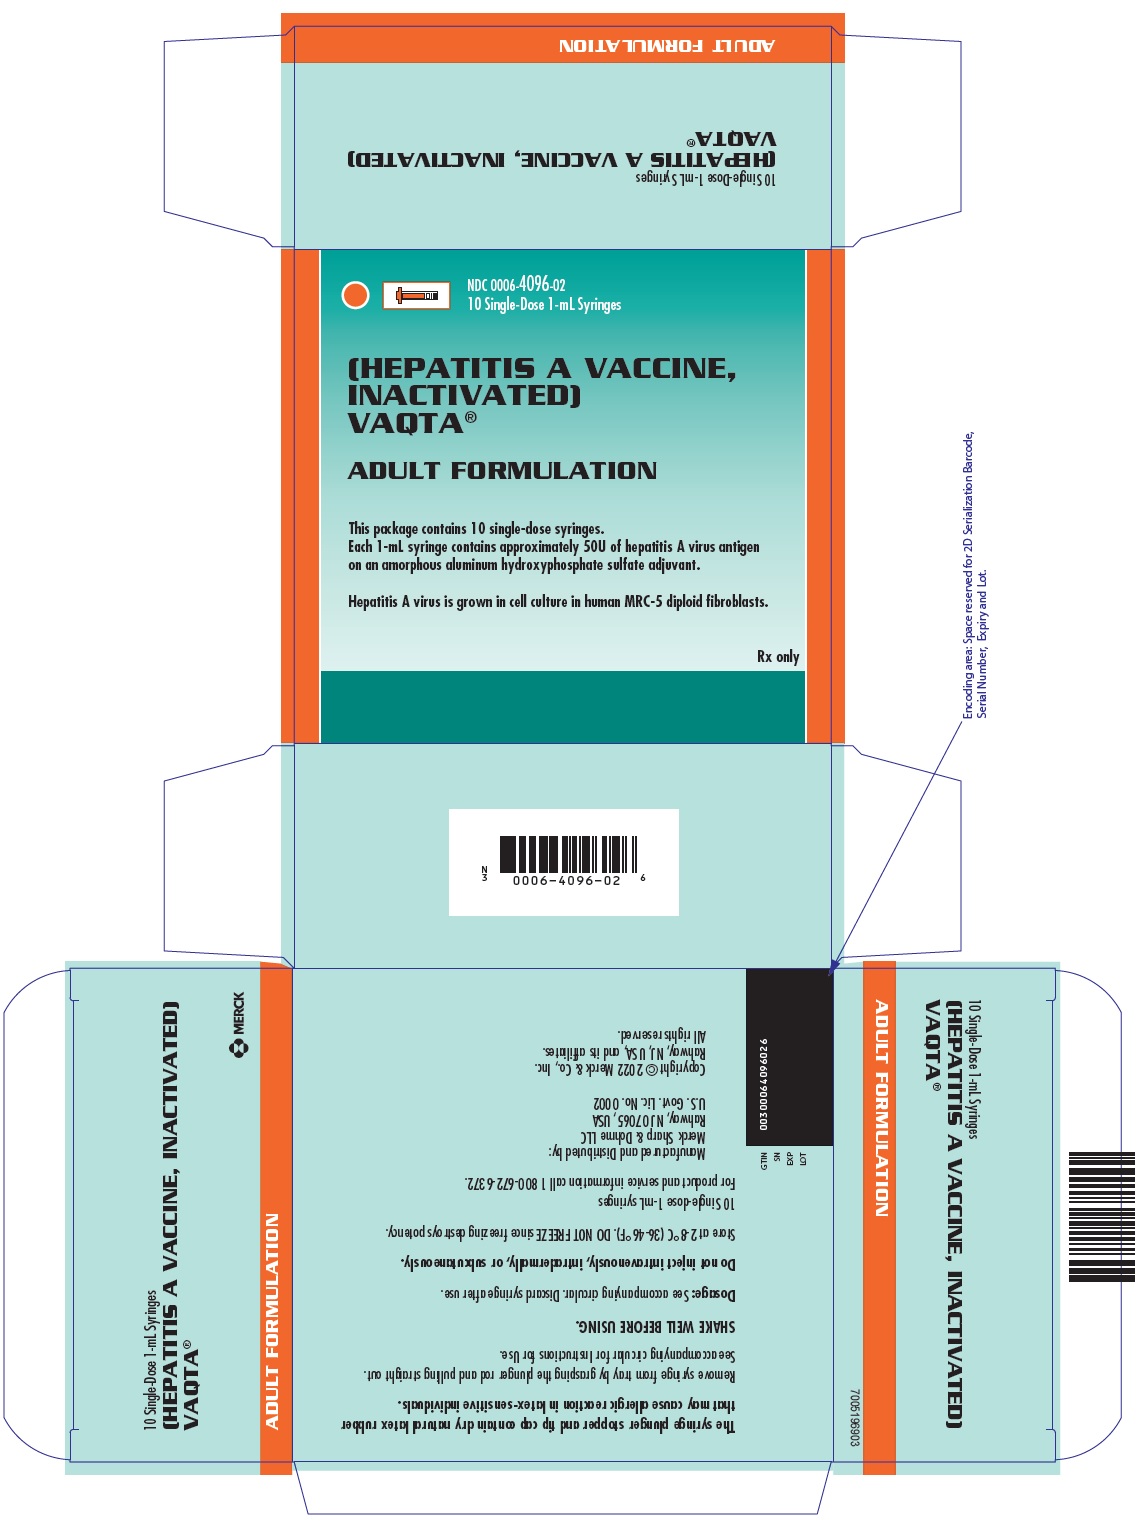 PRINCIPAL DISPLAY PANEL - 1 mL Syringe Carton